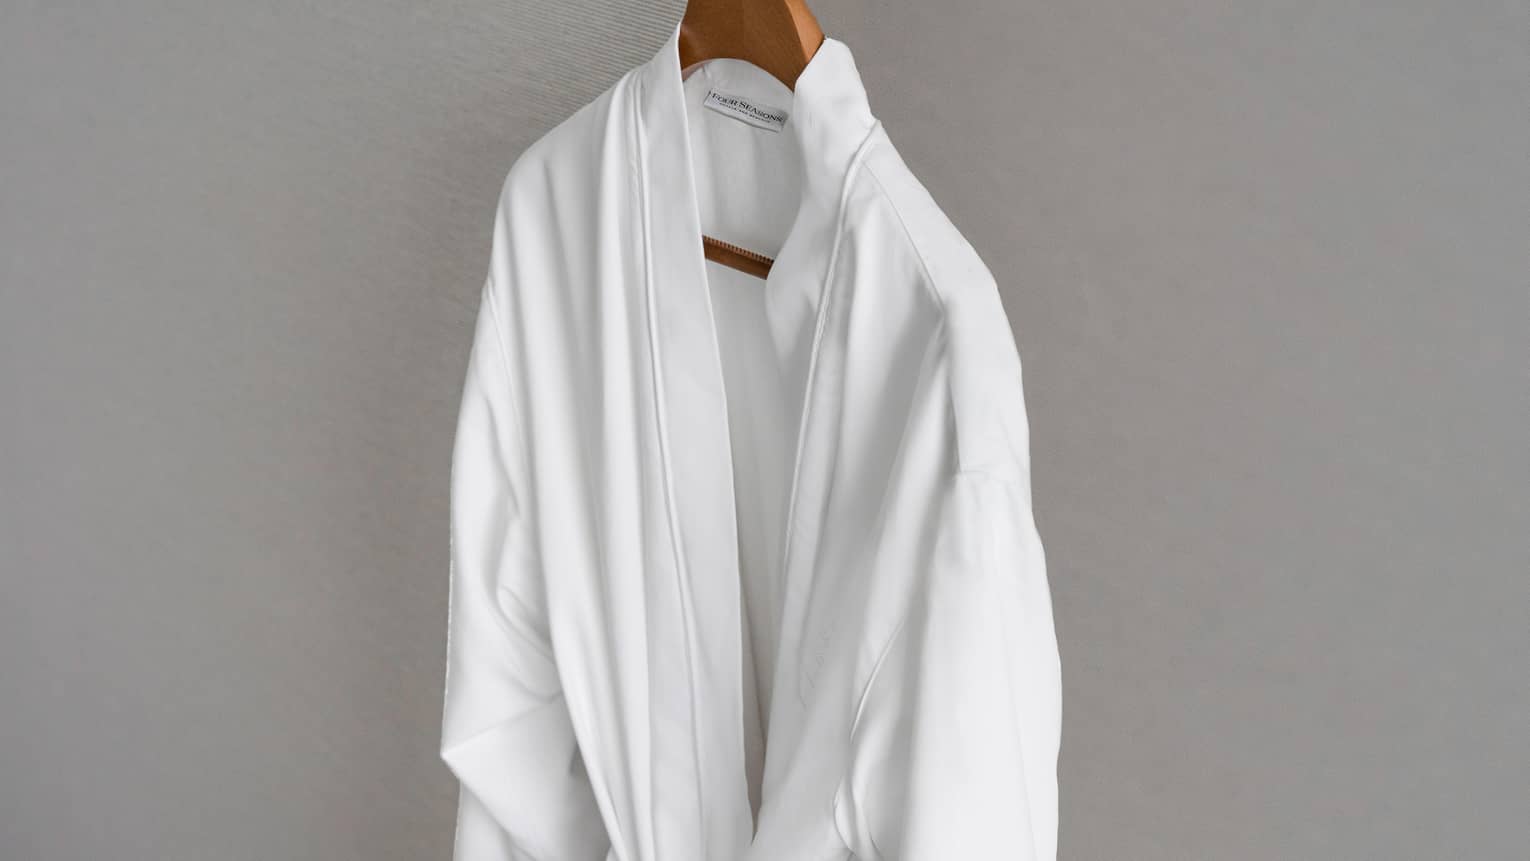 Four Seasons white bathrobe hanging on wooden hanger